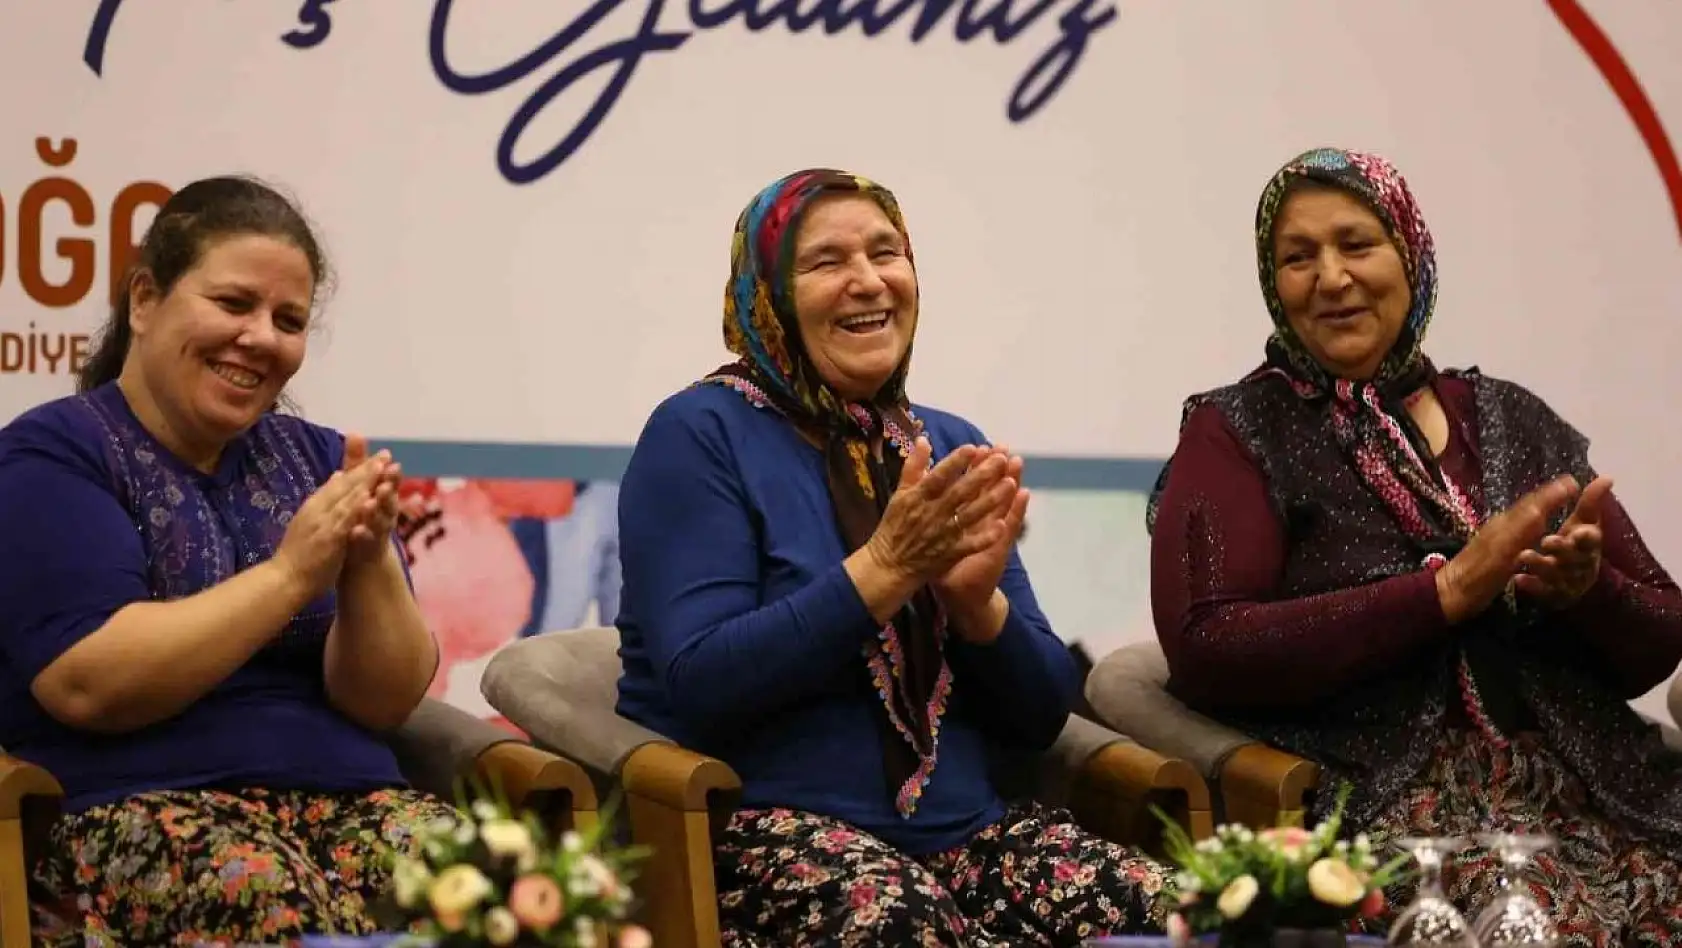 El Emeği ve Girişimci Kadınlar Festivali'ne yoğun ilgi